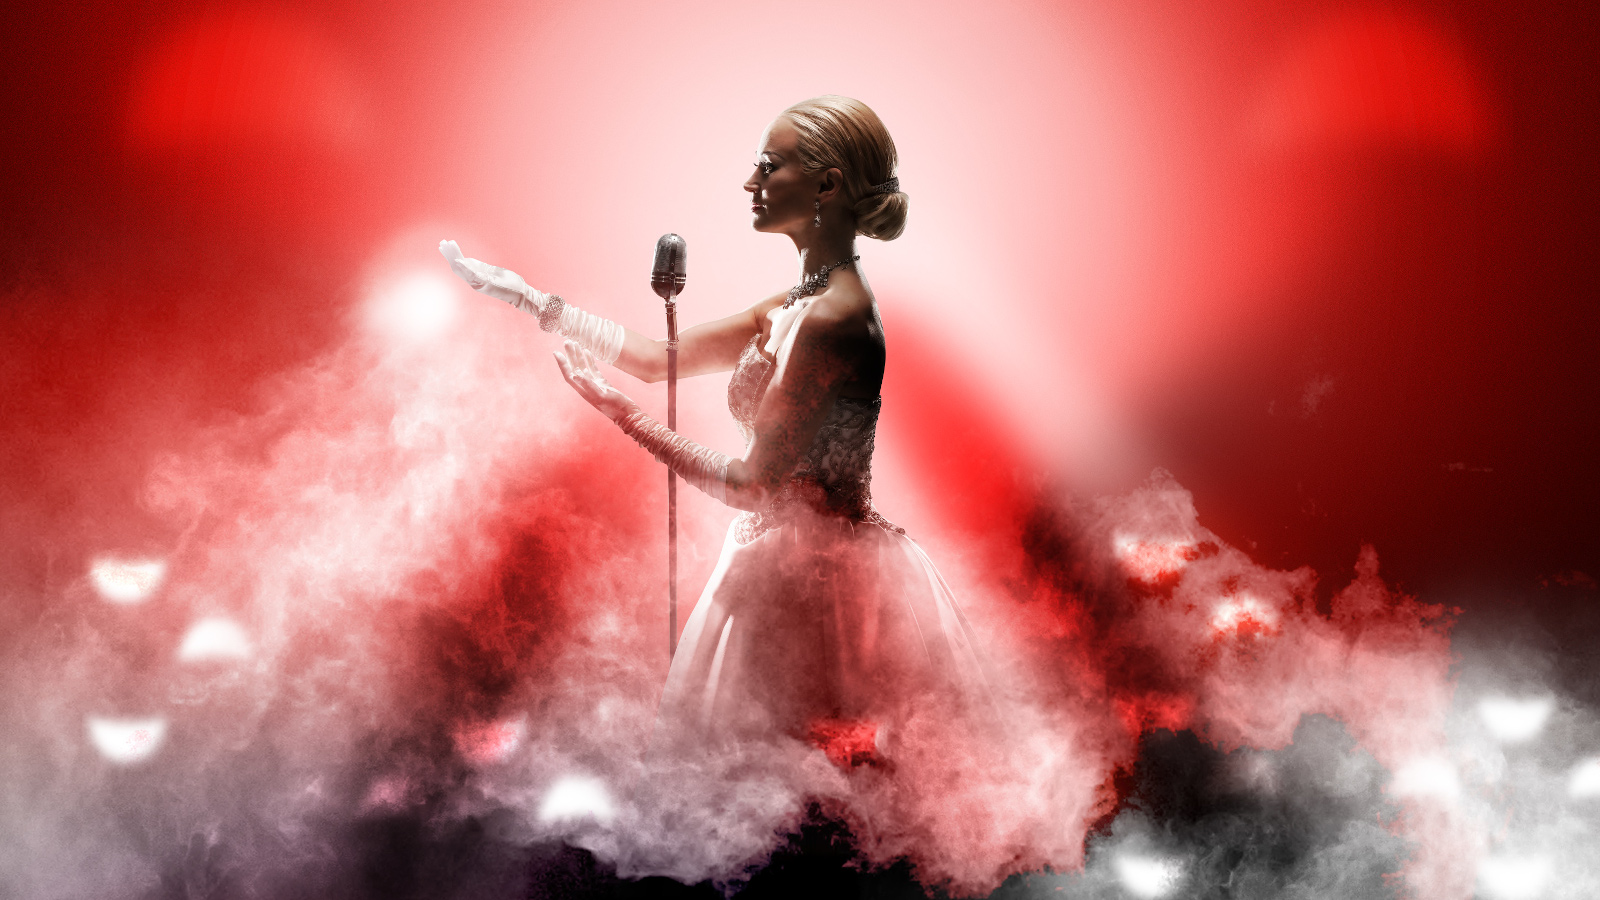 Kuvassa on Helena Rängman punaisessa tyllihelmaisessa puvussa mikrofoni edessään. Kuvassa on valkoisen vaaleanpunaista höyryä melkein vyötärölle asti.